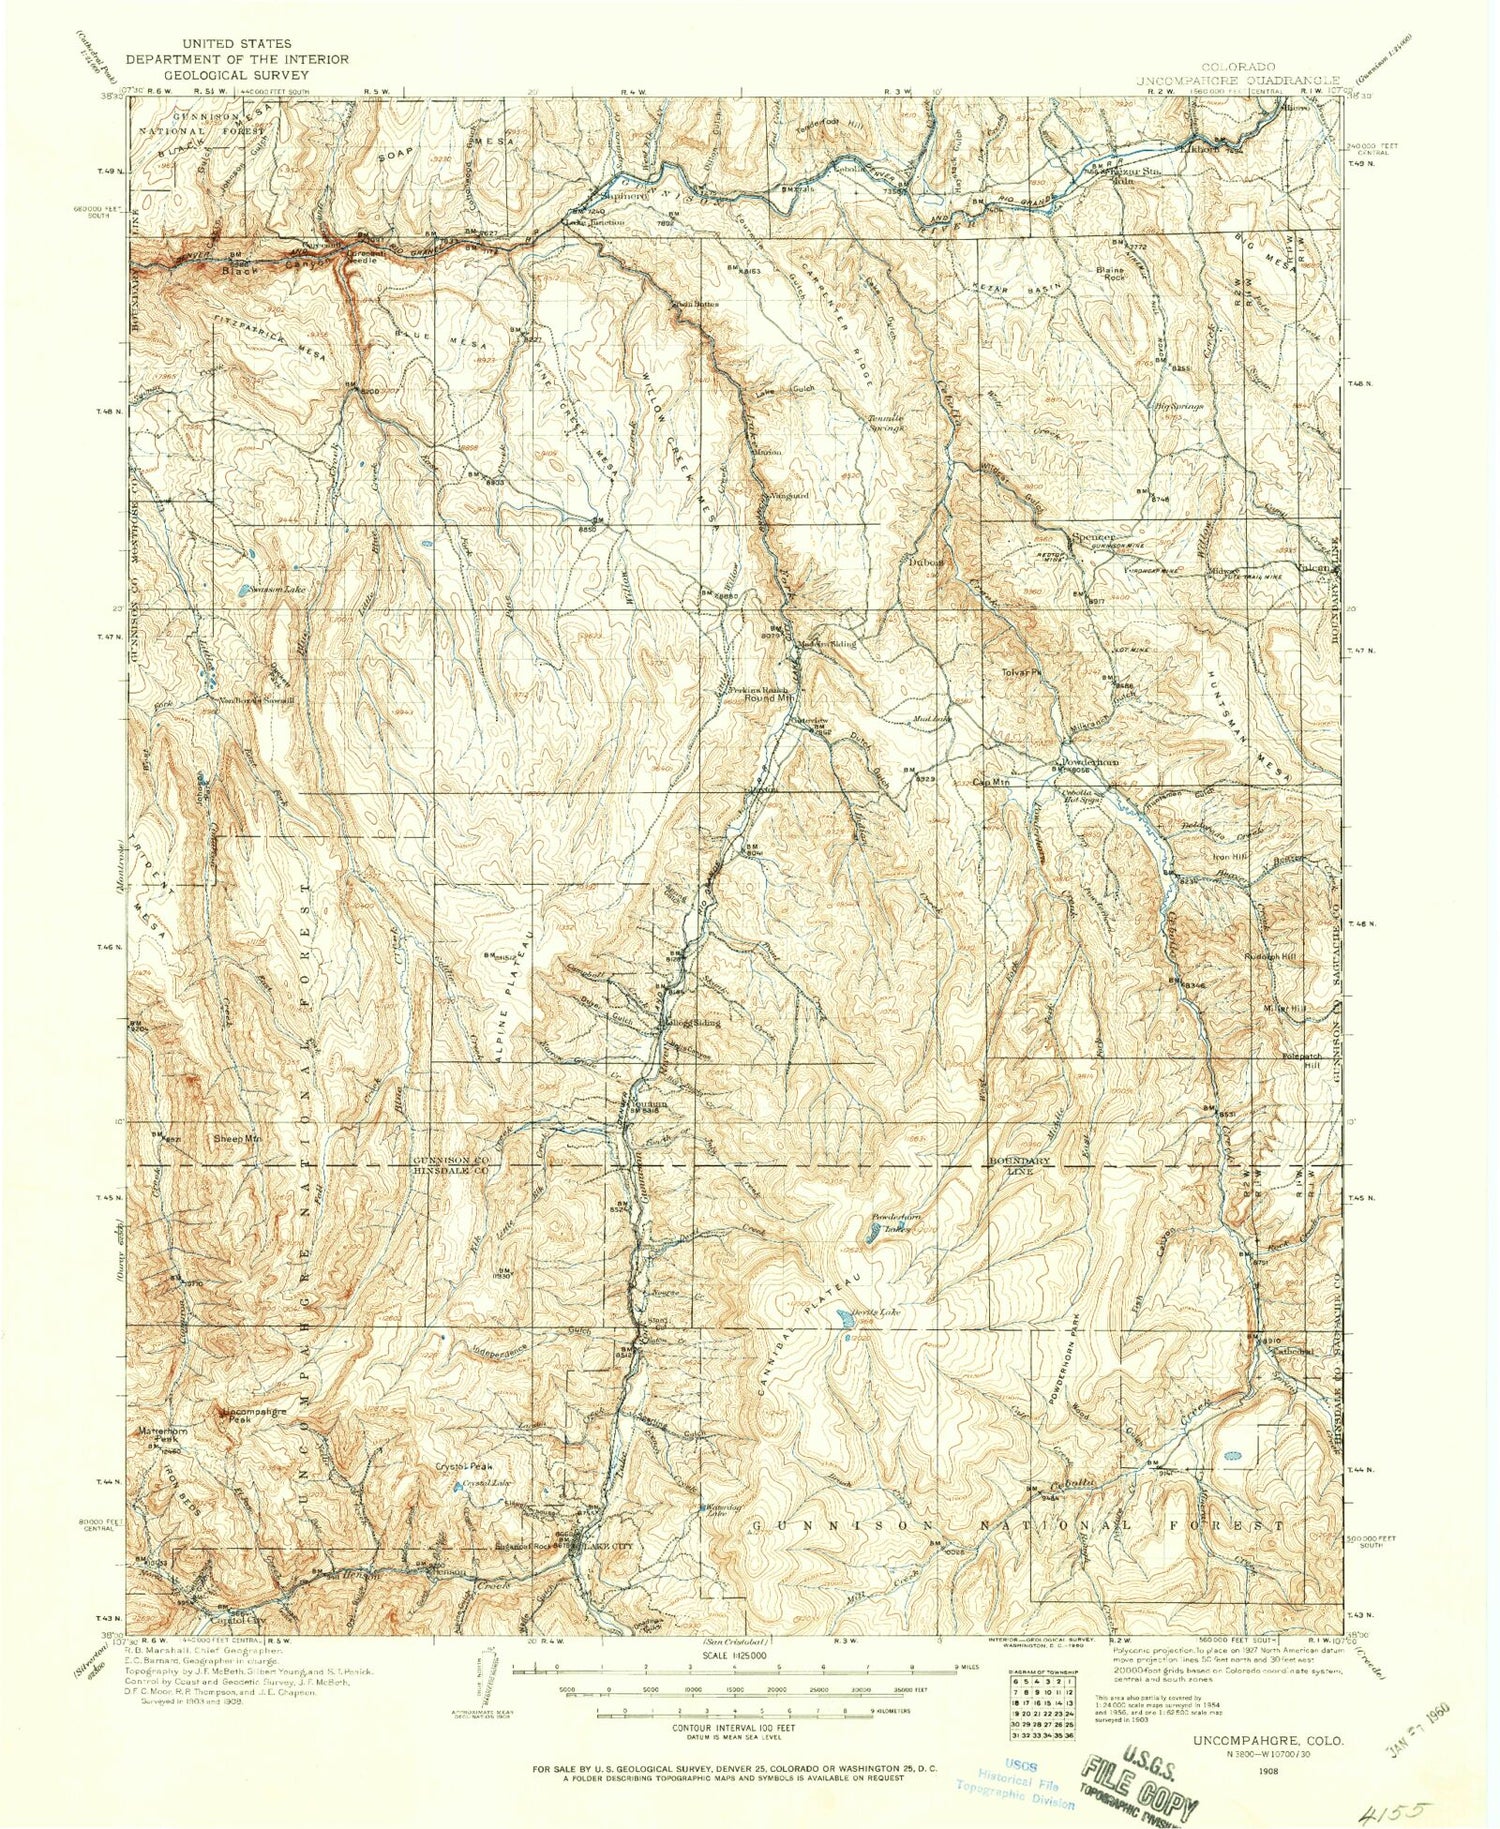 Historic 1908 Uncompahgre Colorado 30'x30' Topo Map Image